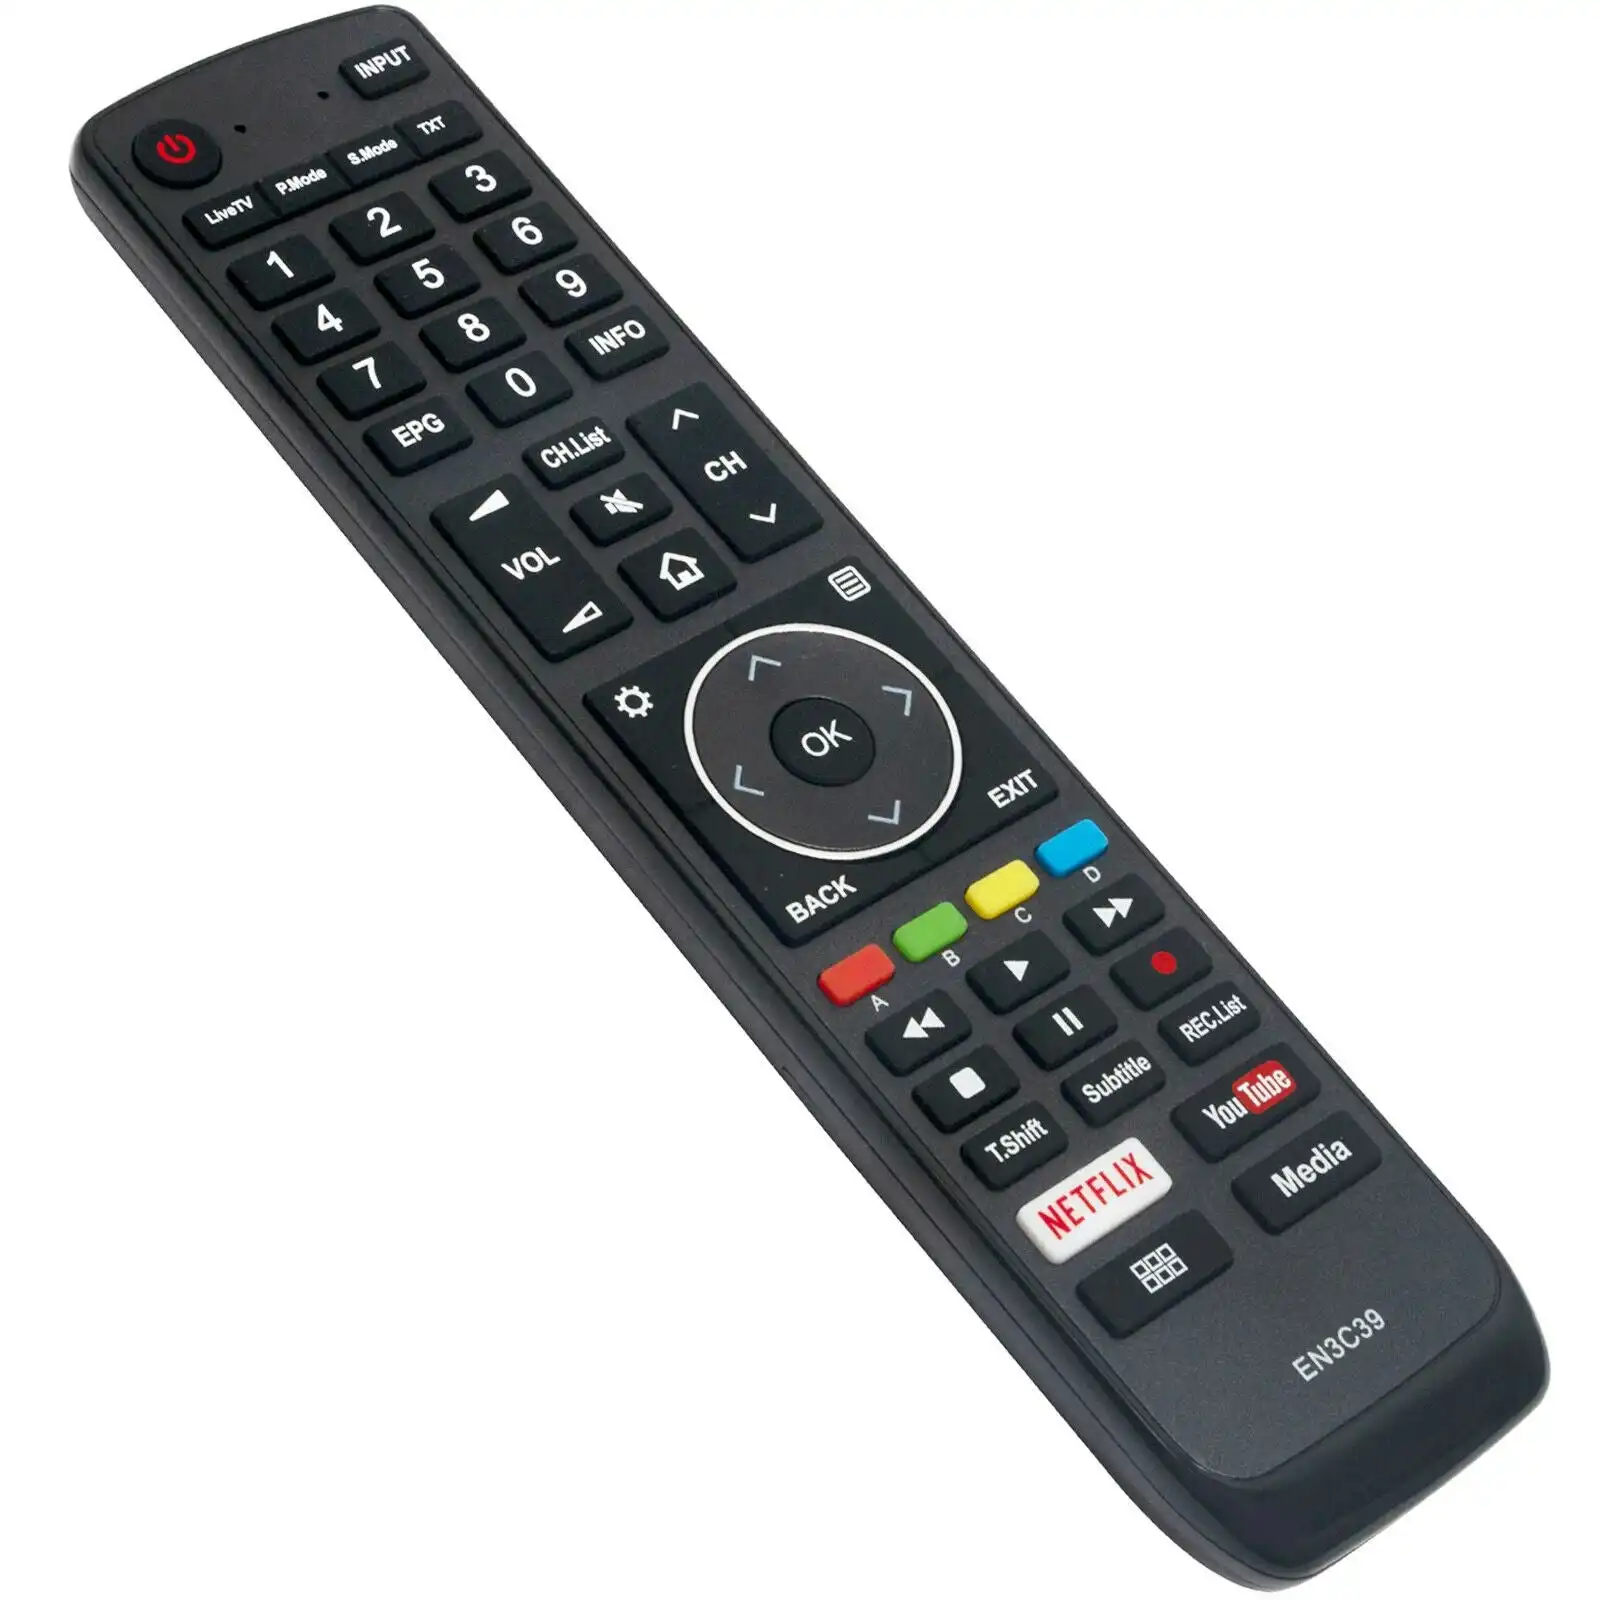 EN3C39 Remote Control fit for Hisense Smart TV 55N8700UW 65N8700UWG 50M7030U